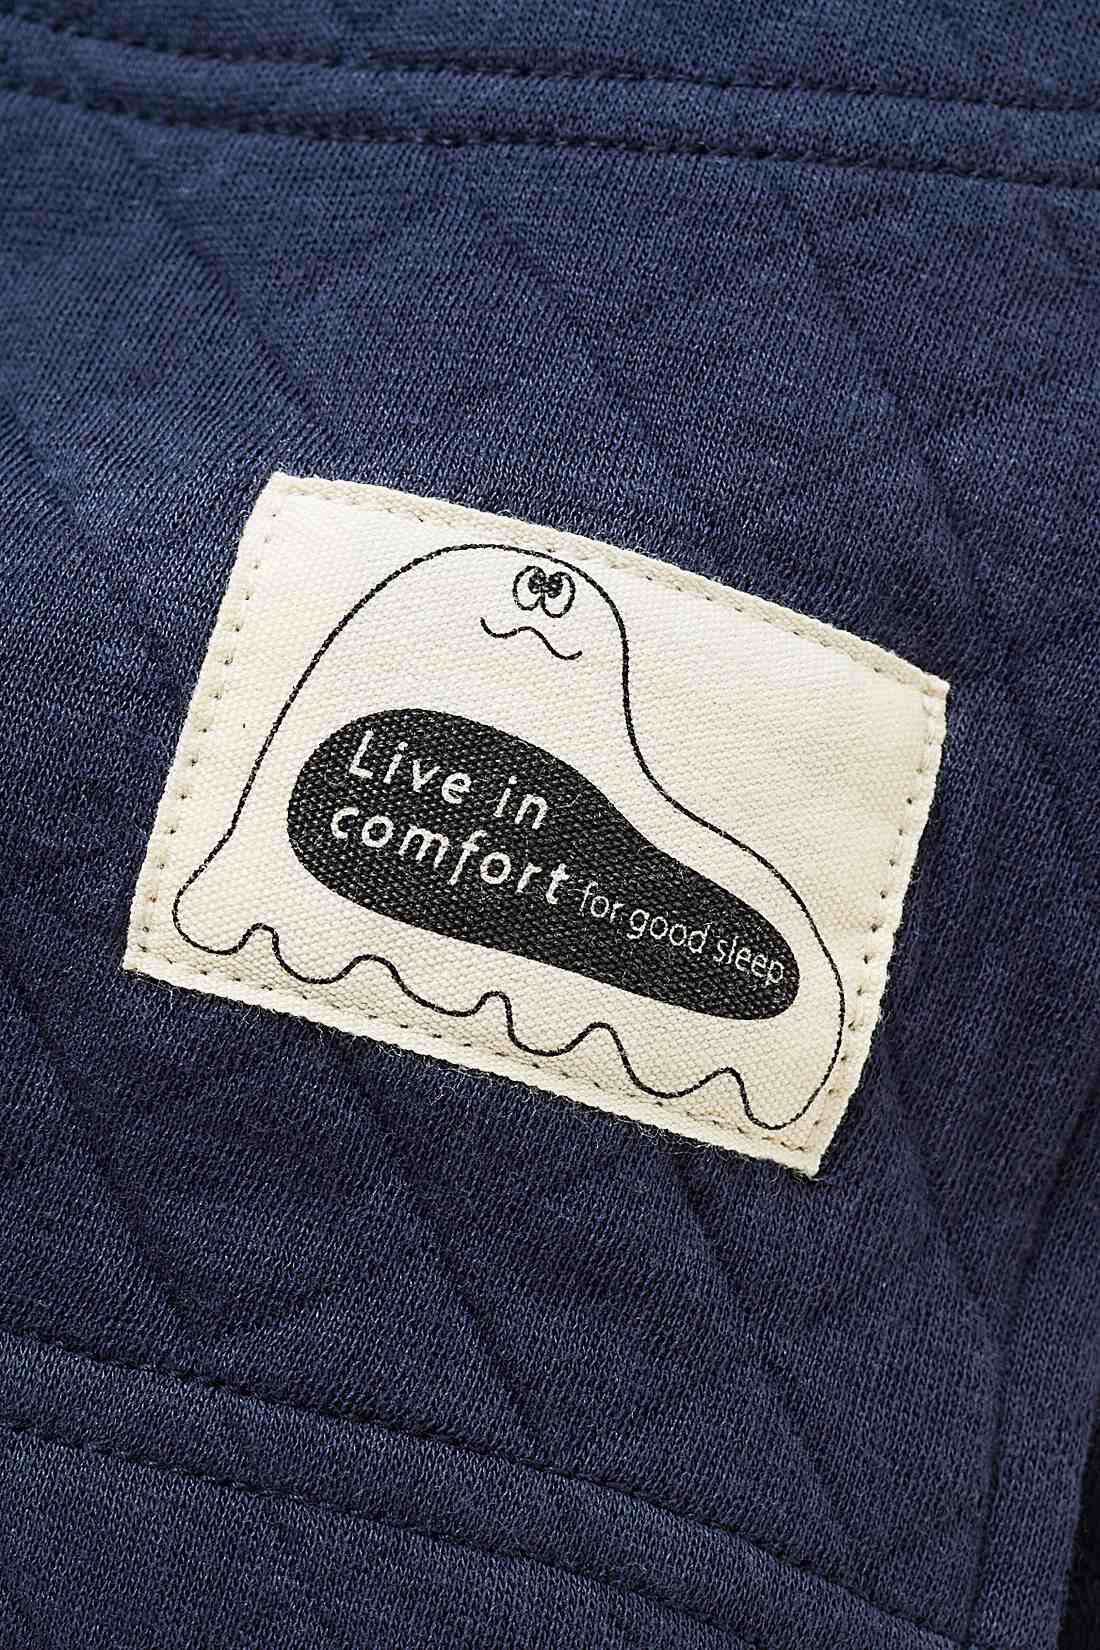 Live in  comfort|リブ イン コンフォート　コットンのふんわりやさしい肌心地のキルティングパジャマ〈ネイビー×ギンガム〉|ネームタグはオリジナルキャラのおばけさん。楽しい夢をみせてくれそう。